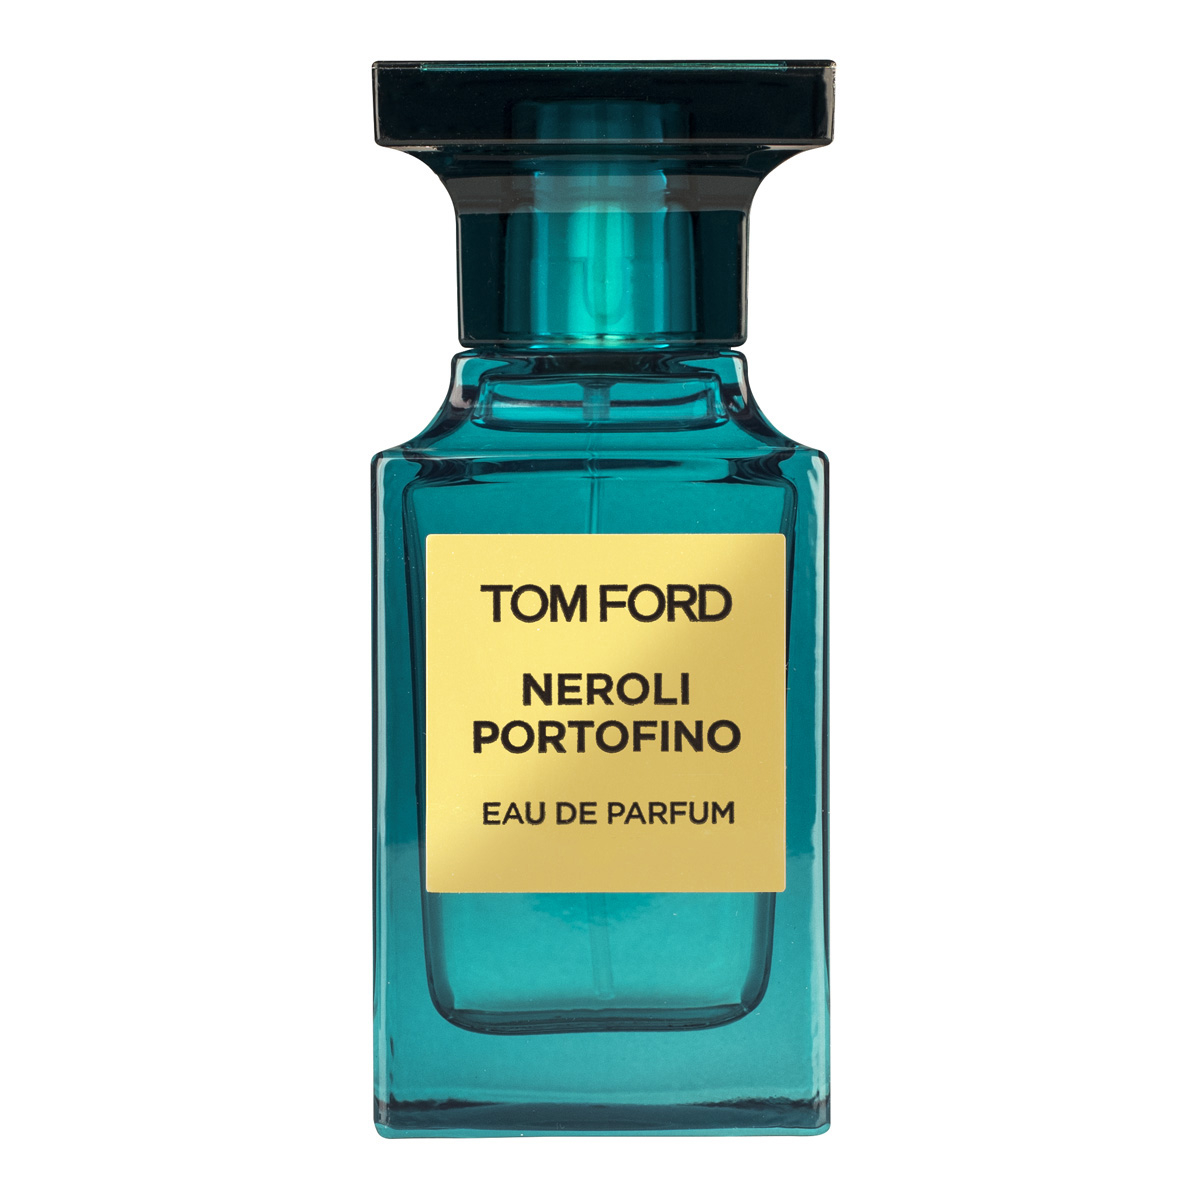 Buy for €206.00 from Beautybuys Ireland - Tom Ford Neroli Portofino ...